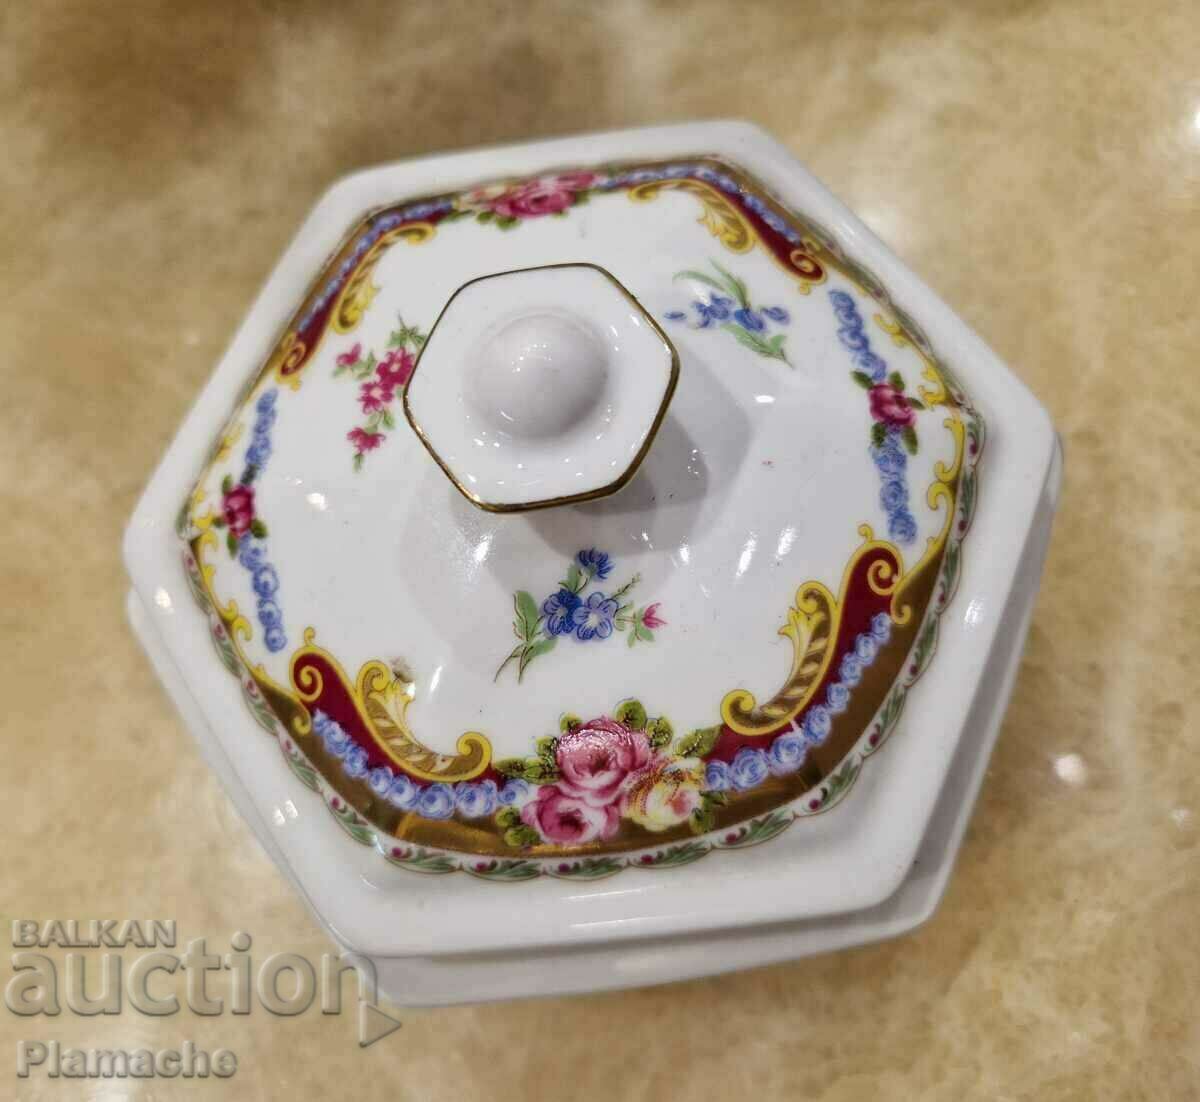 Limoges porcelain tray